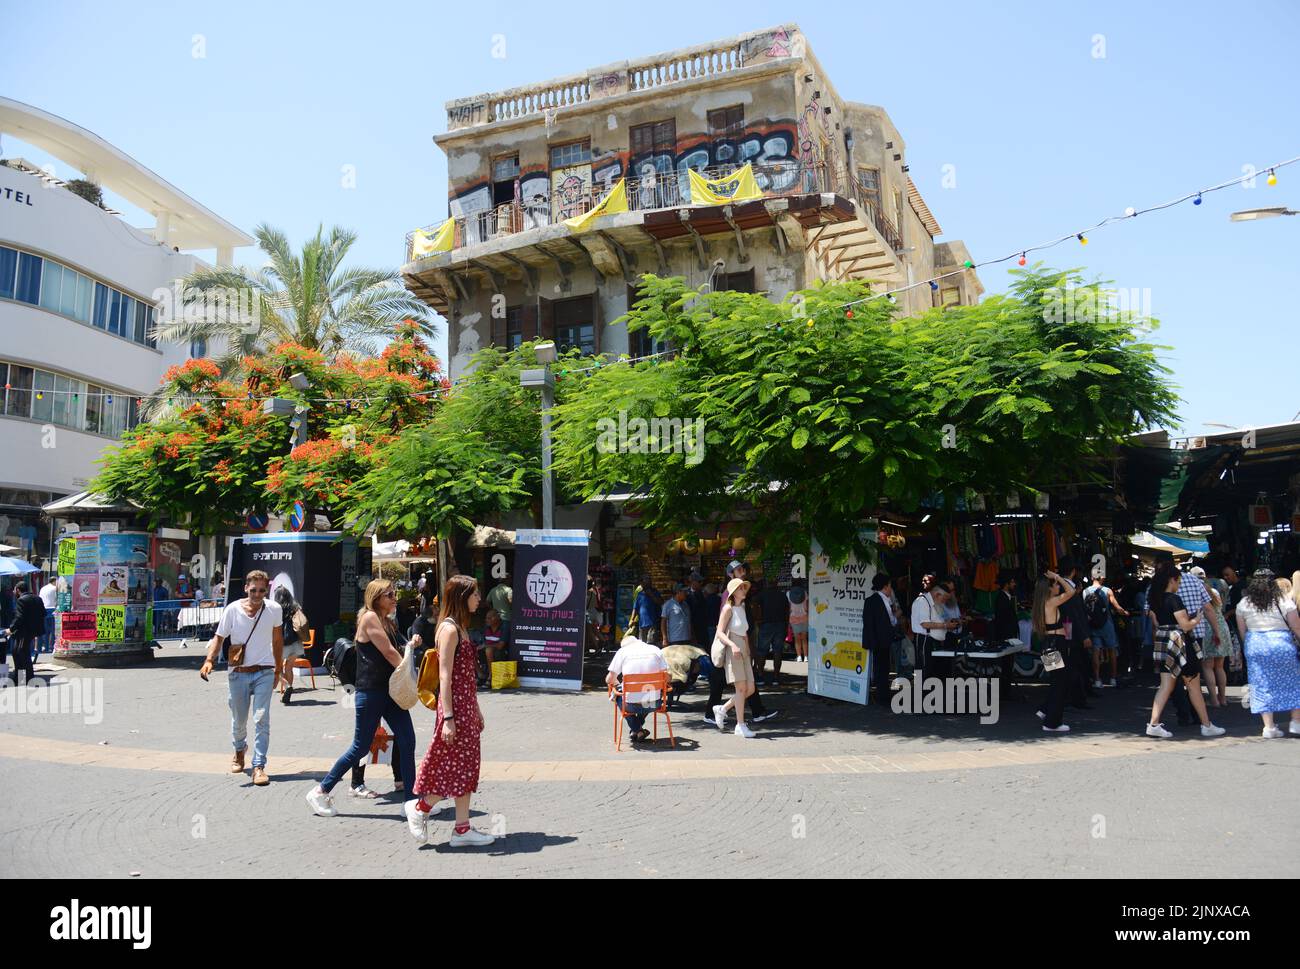 Entrada al mercado del Carmelo desde la calle Allenby en Tel Aviv, Israel. Foto de stock